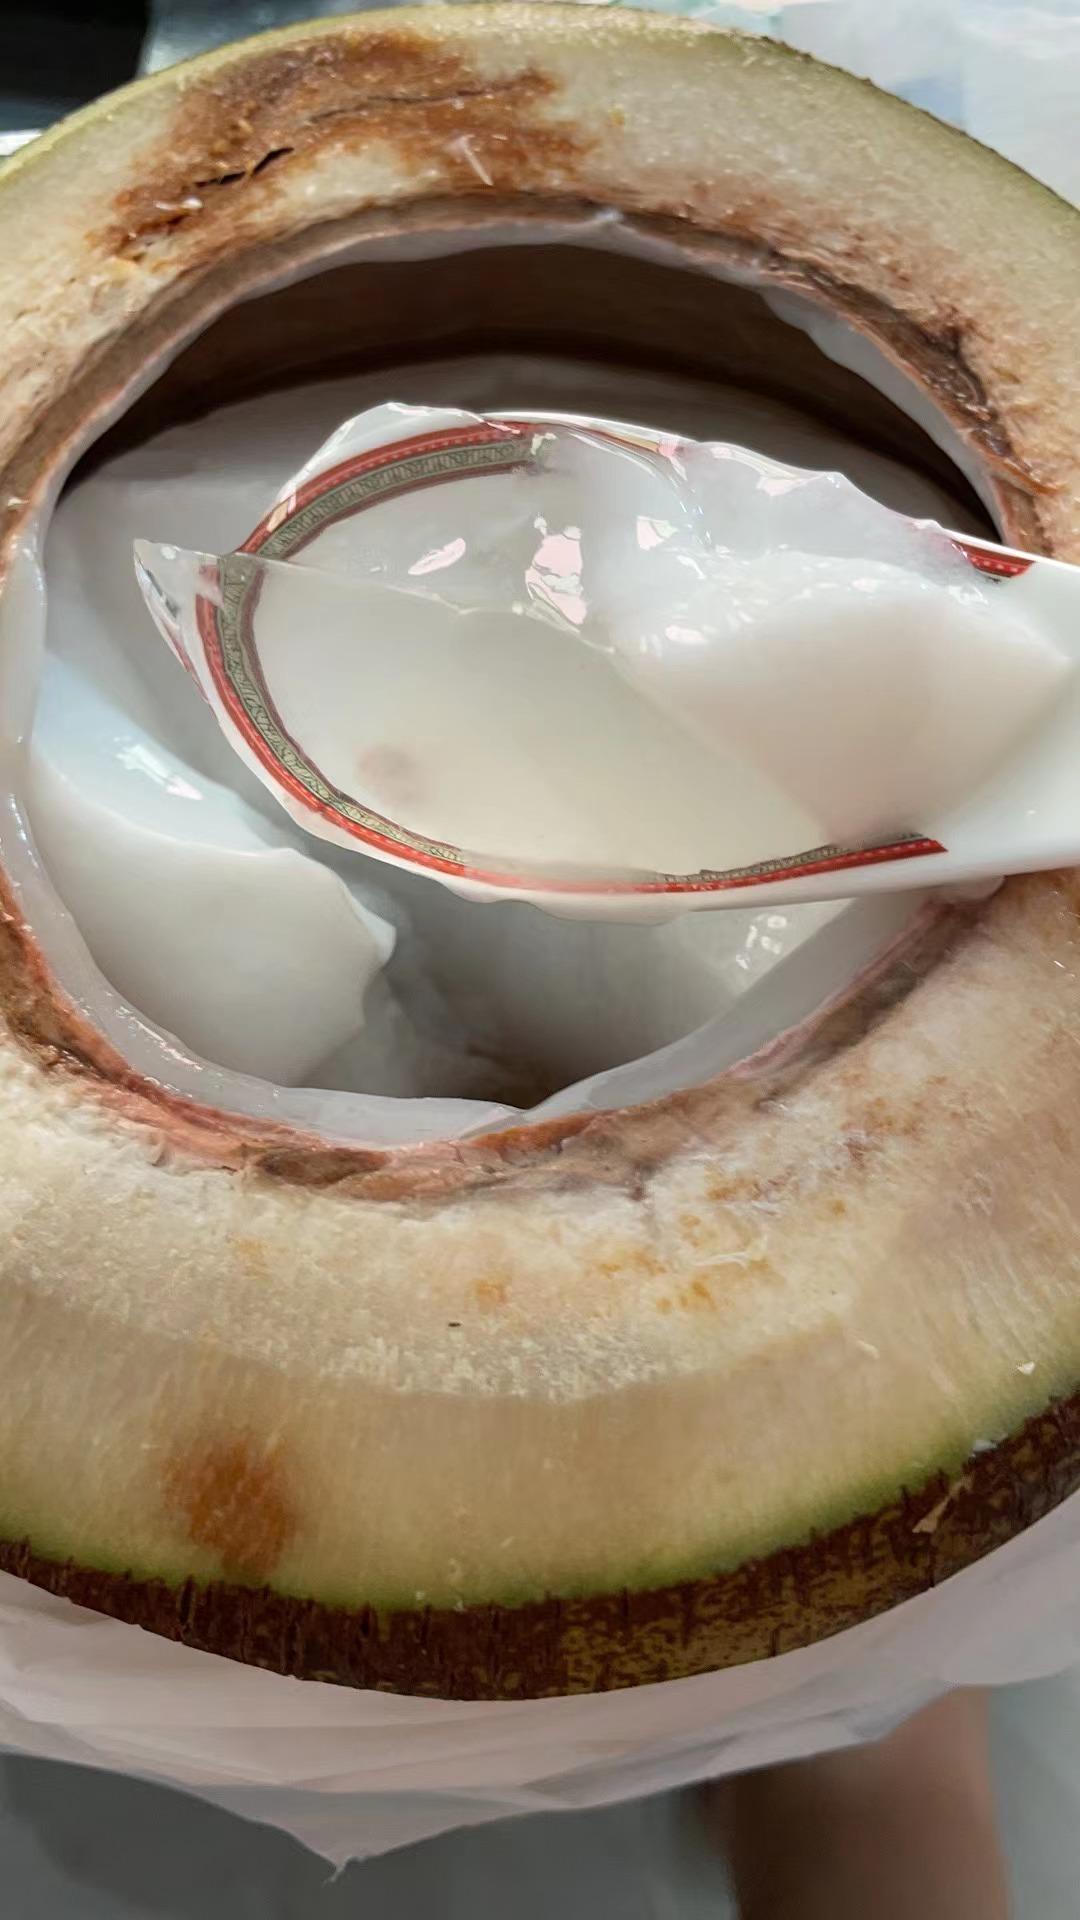 椰子怎么吃椰汁和椰肉，海南人教你椰子的食用方法